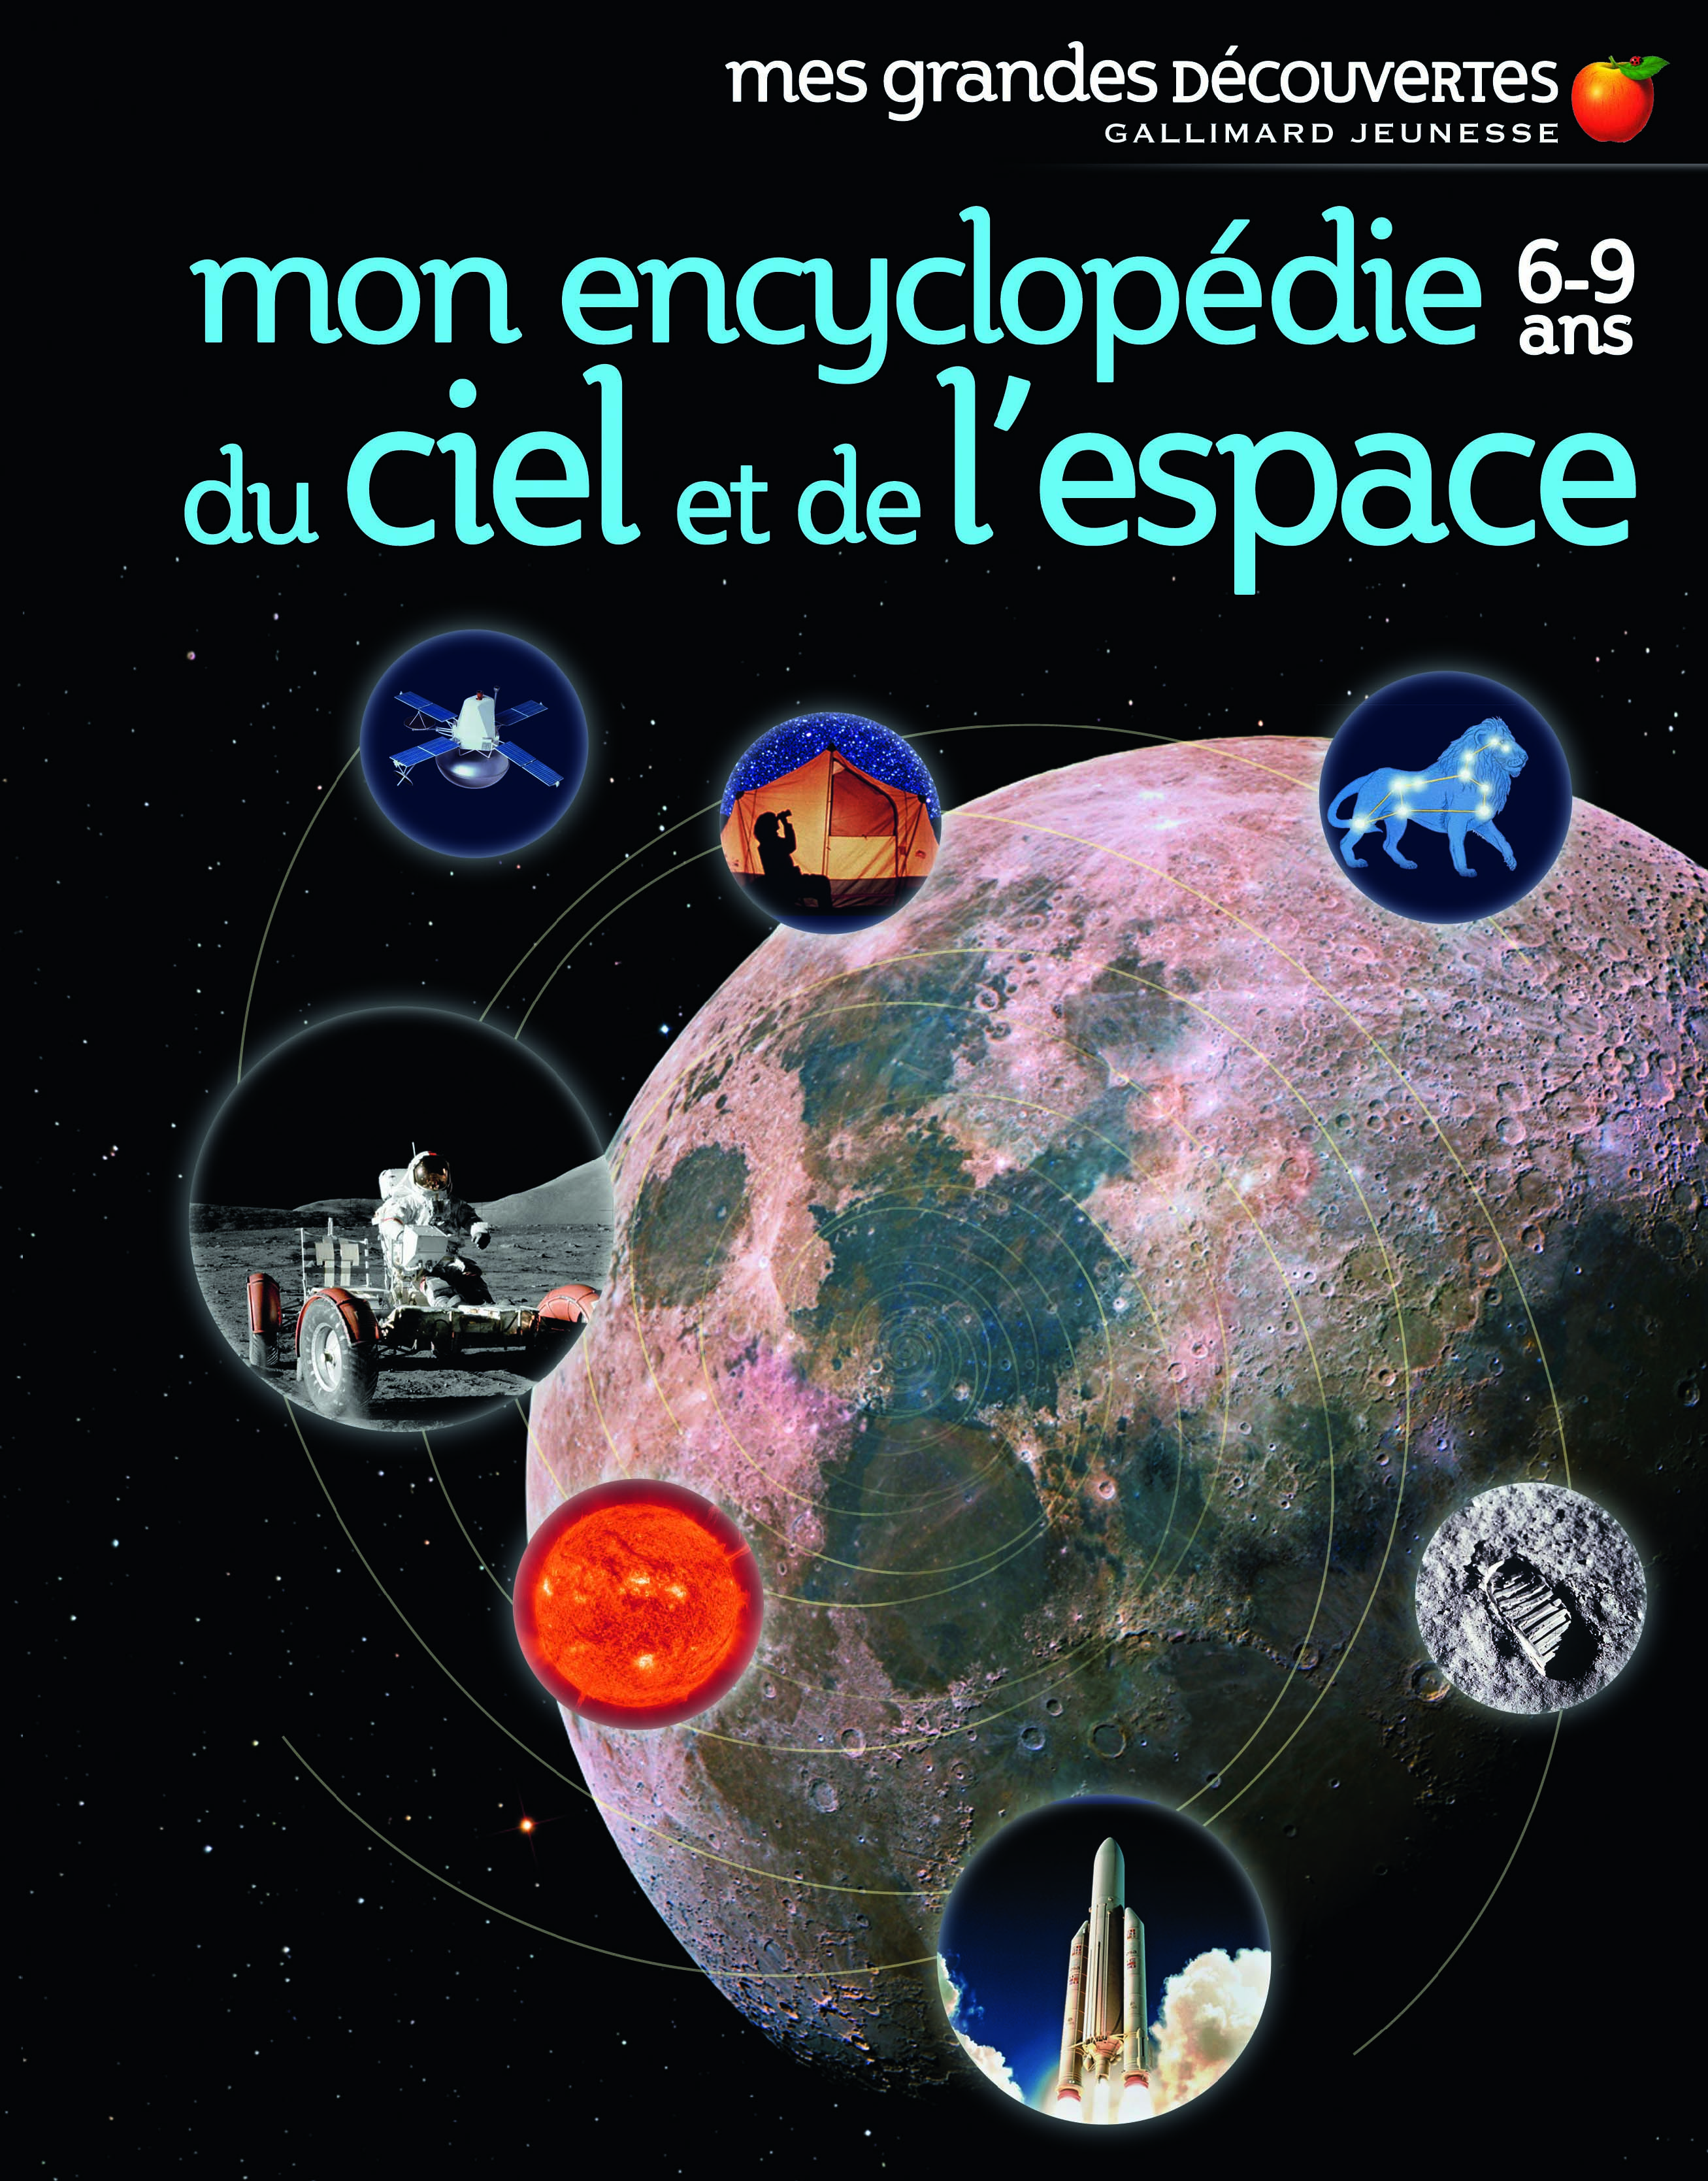  Livre d'Astronomie pour Enfants: Encyclopédie de tout